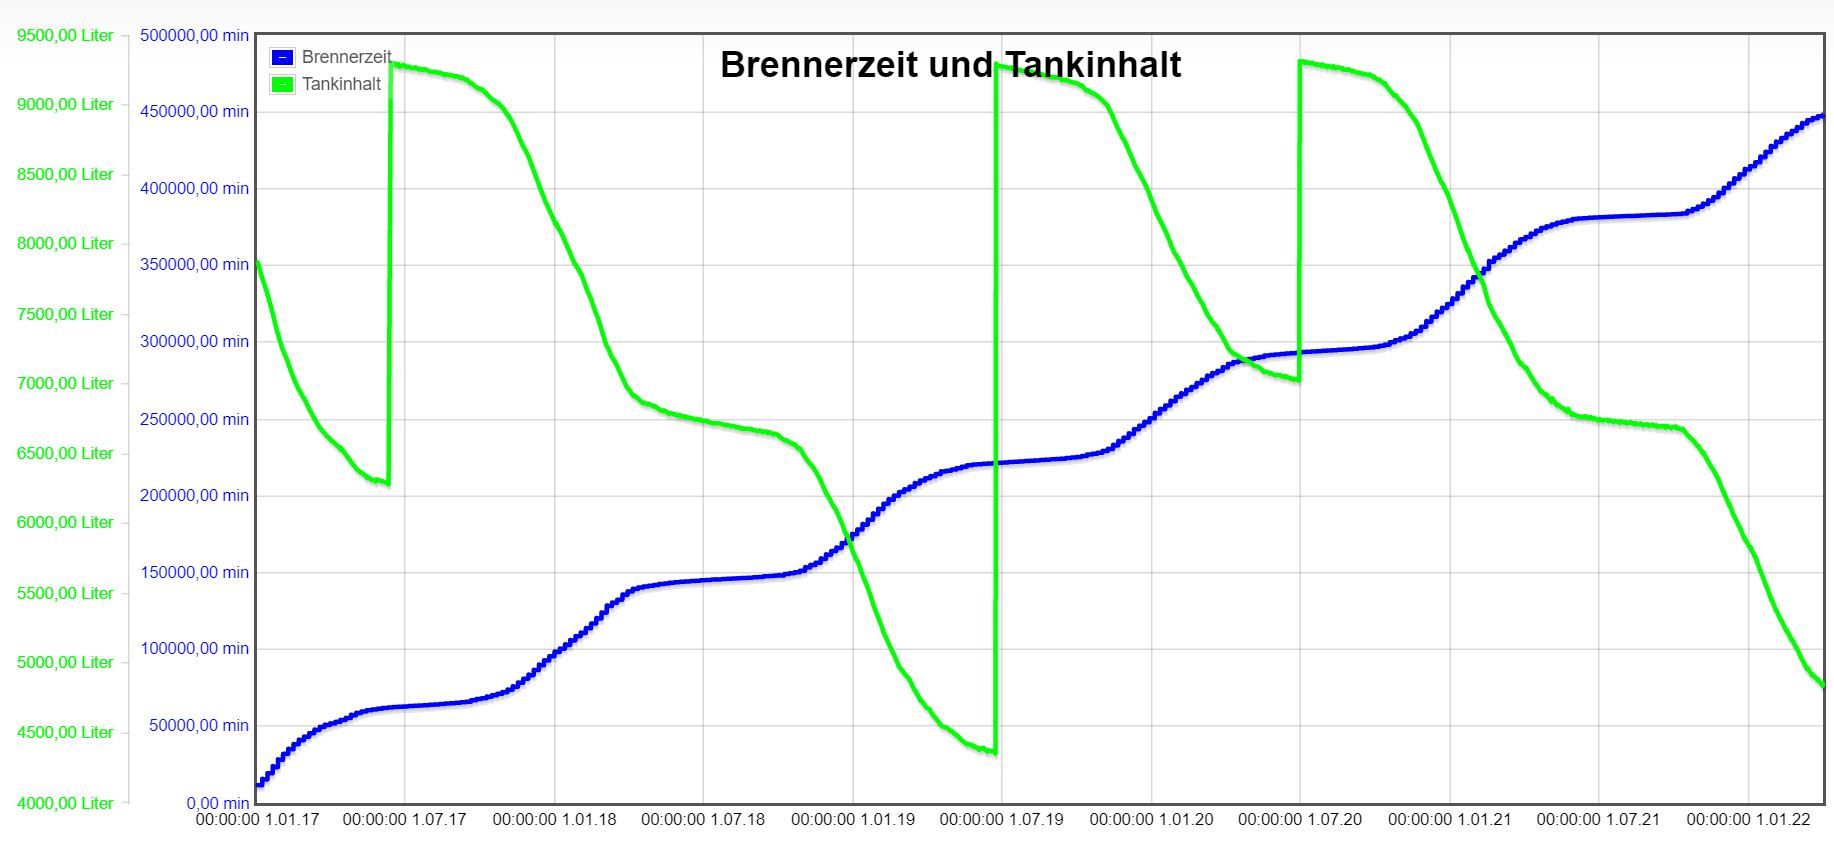 Heizoel-Brennerzeit-Tankinhalt-2-2017bis2022.JPG